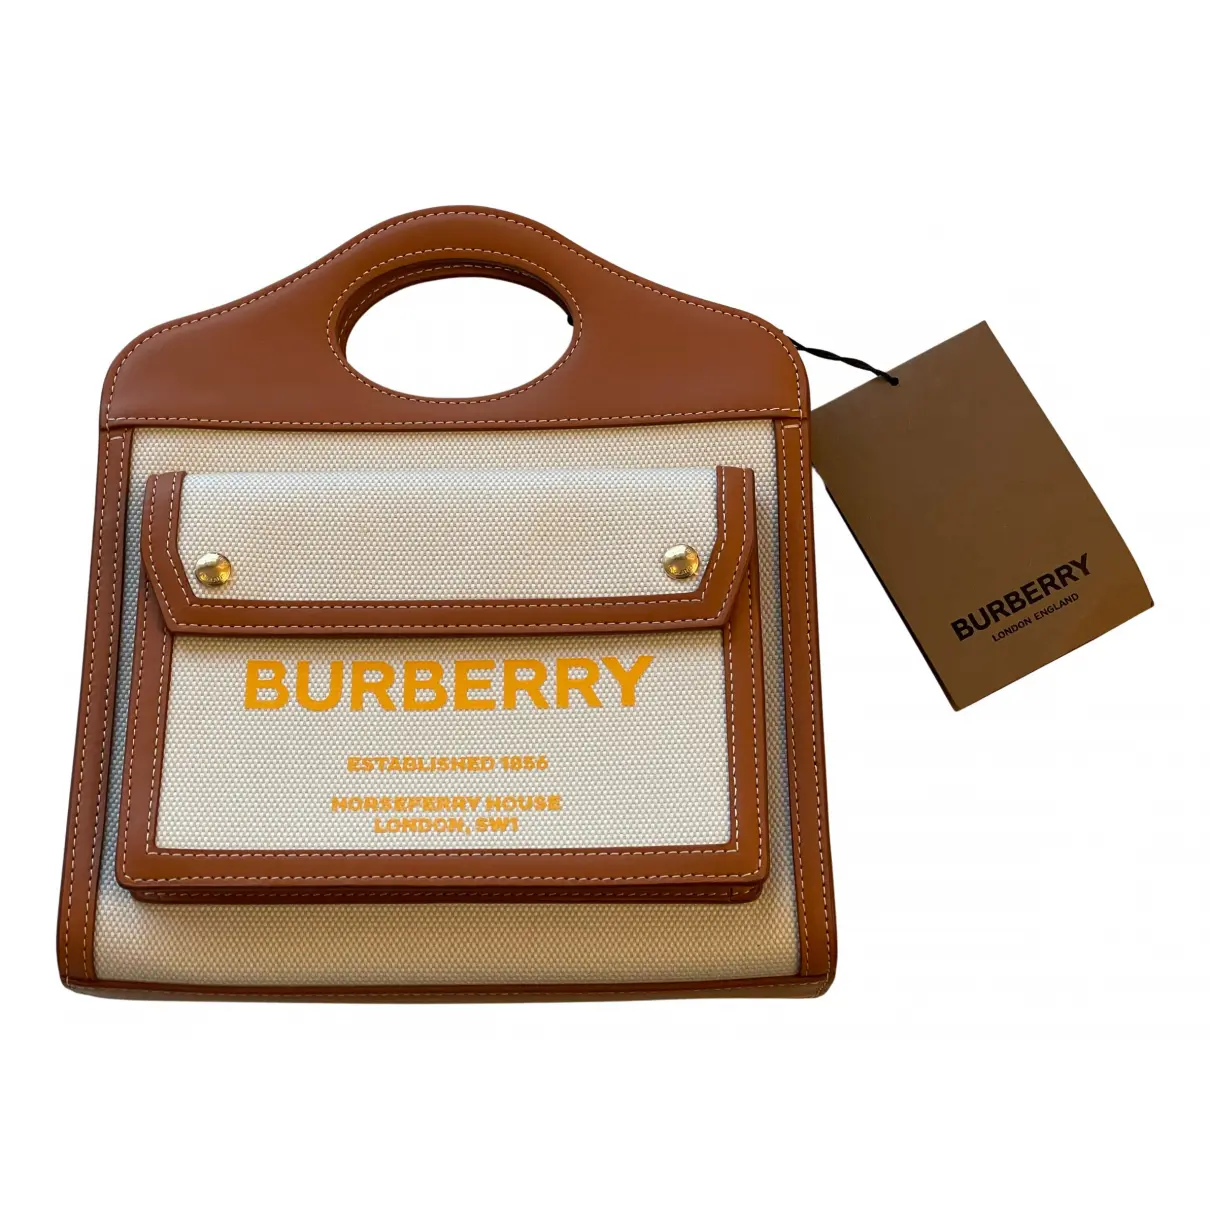 Pocket handbag Burberry